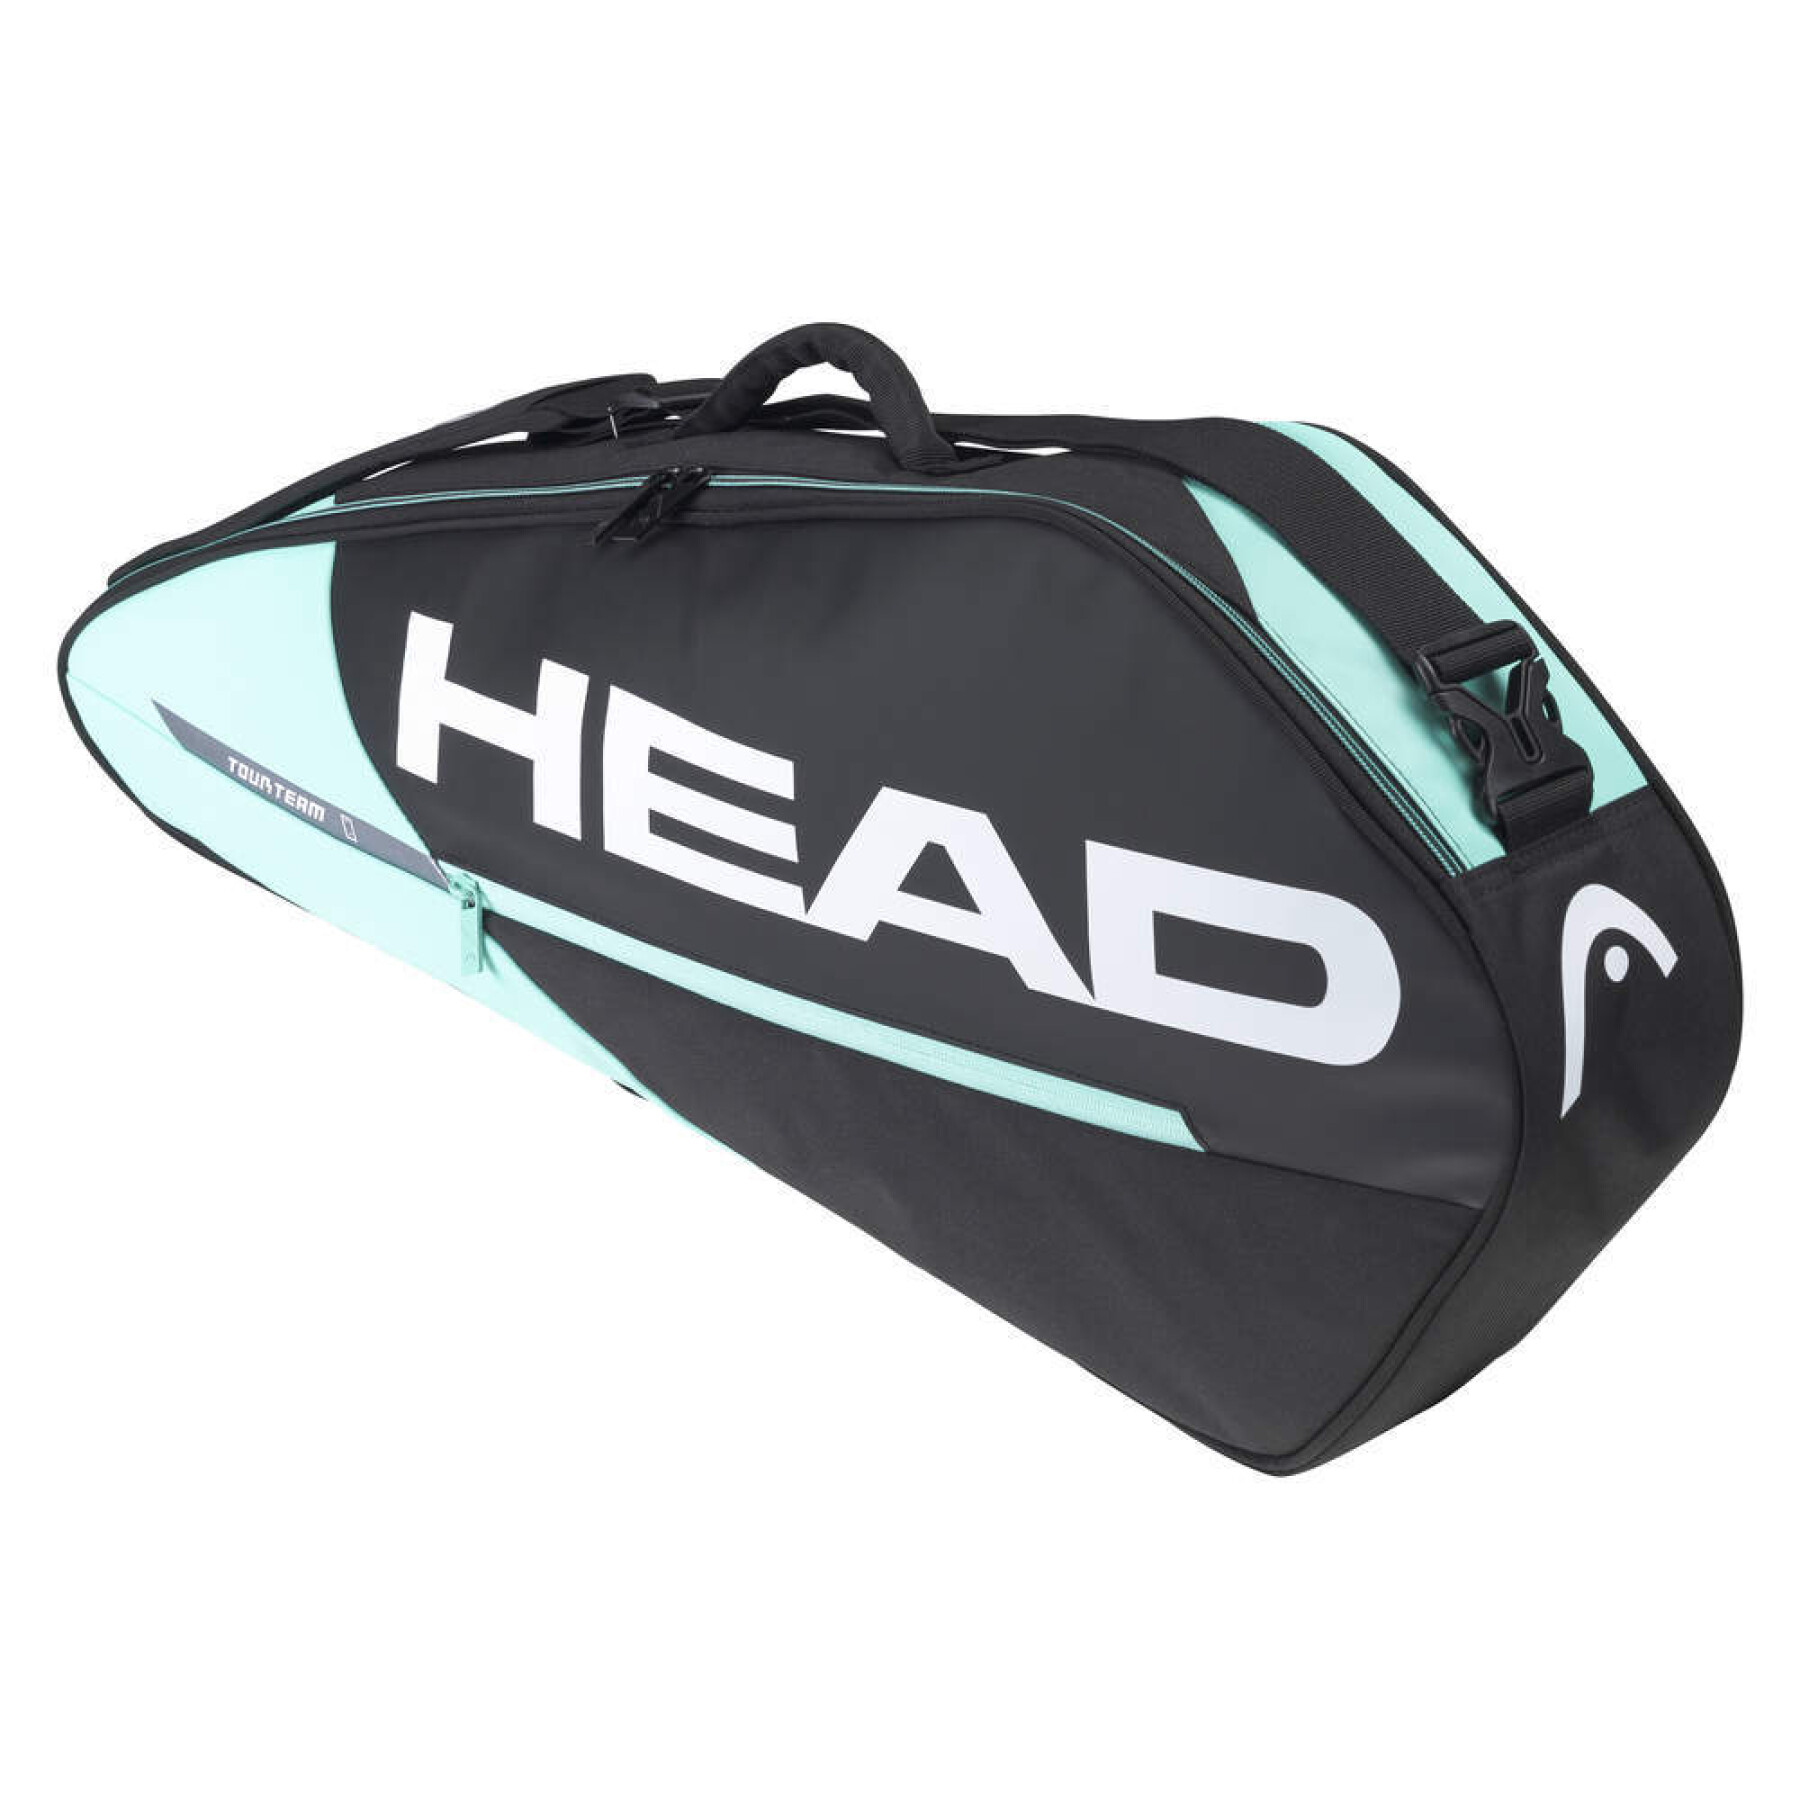 Tennis racket Bag Head Tour Team 3R